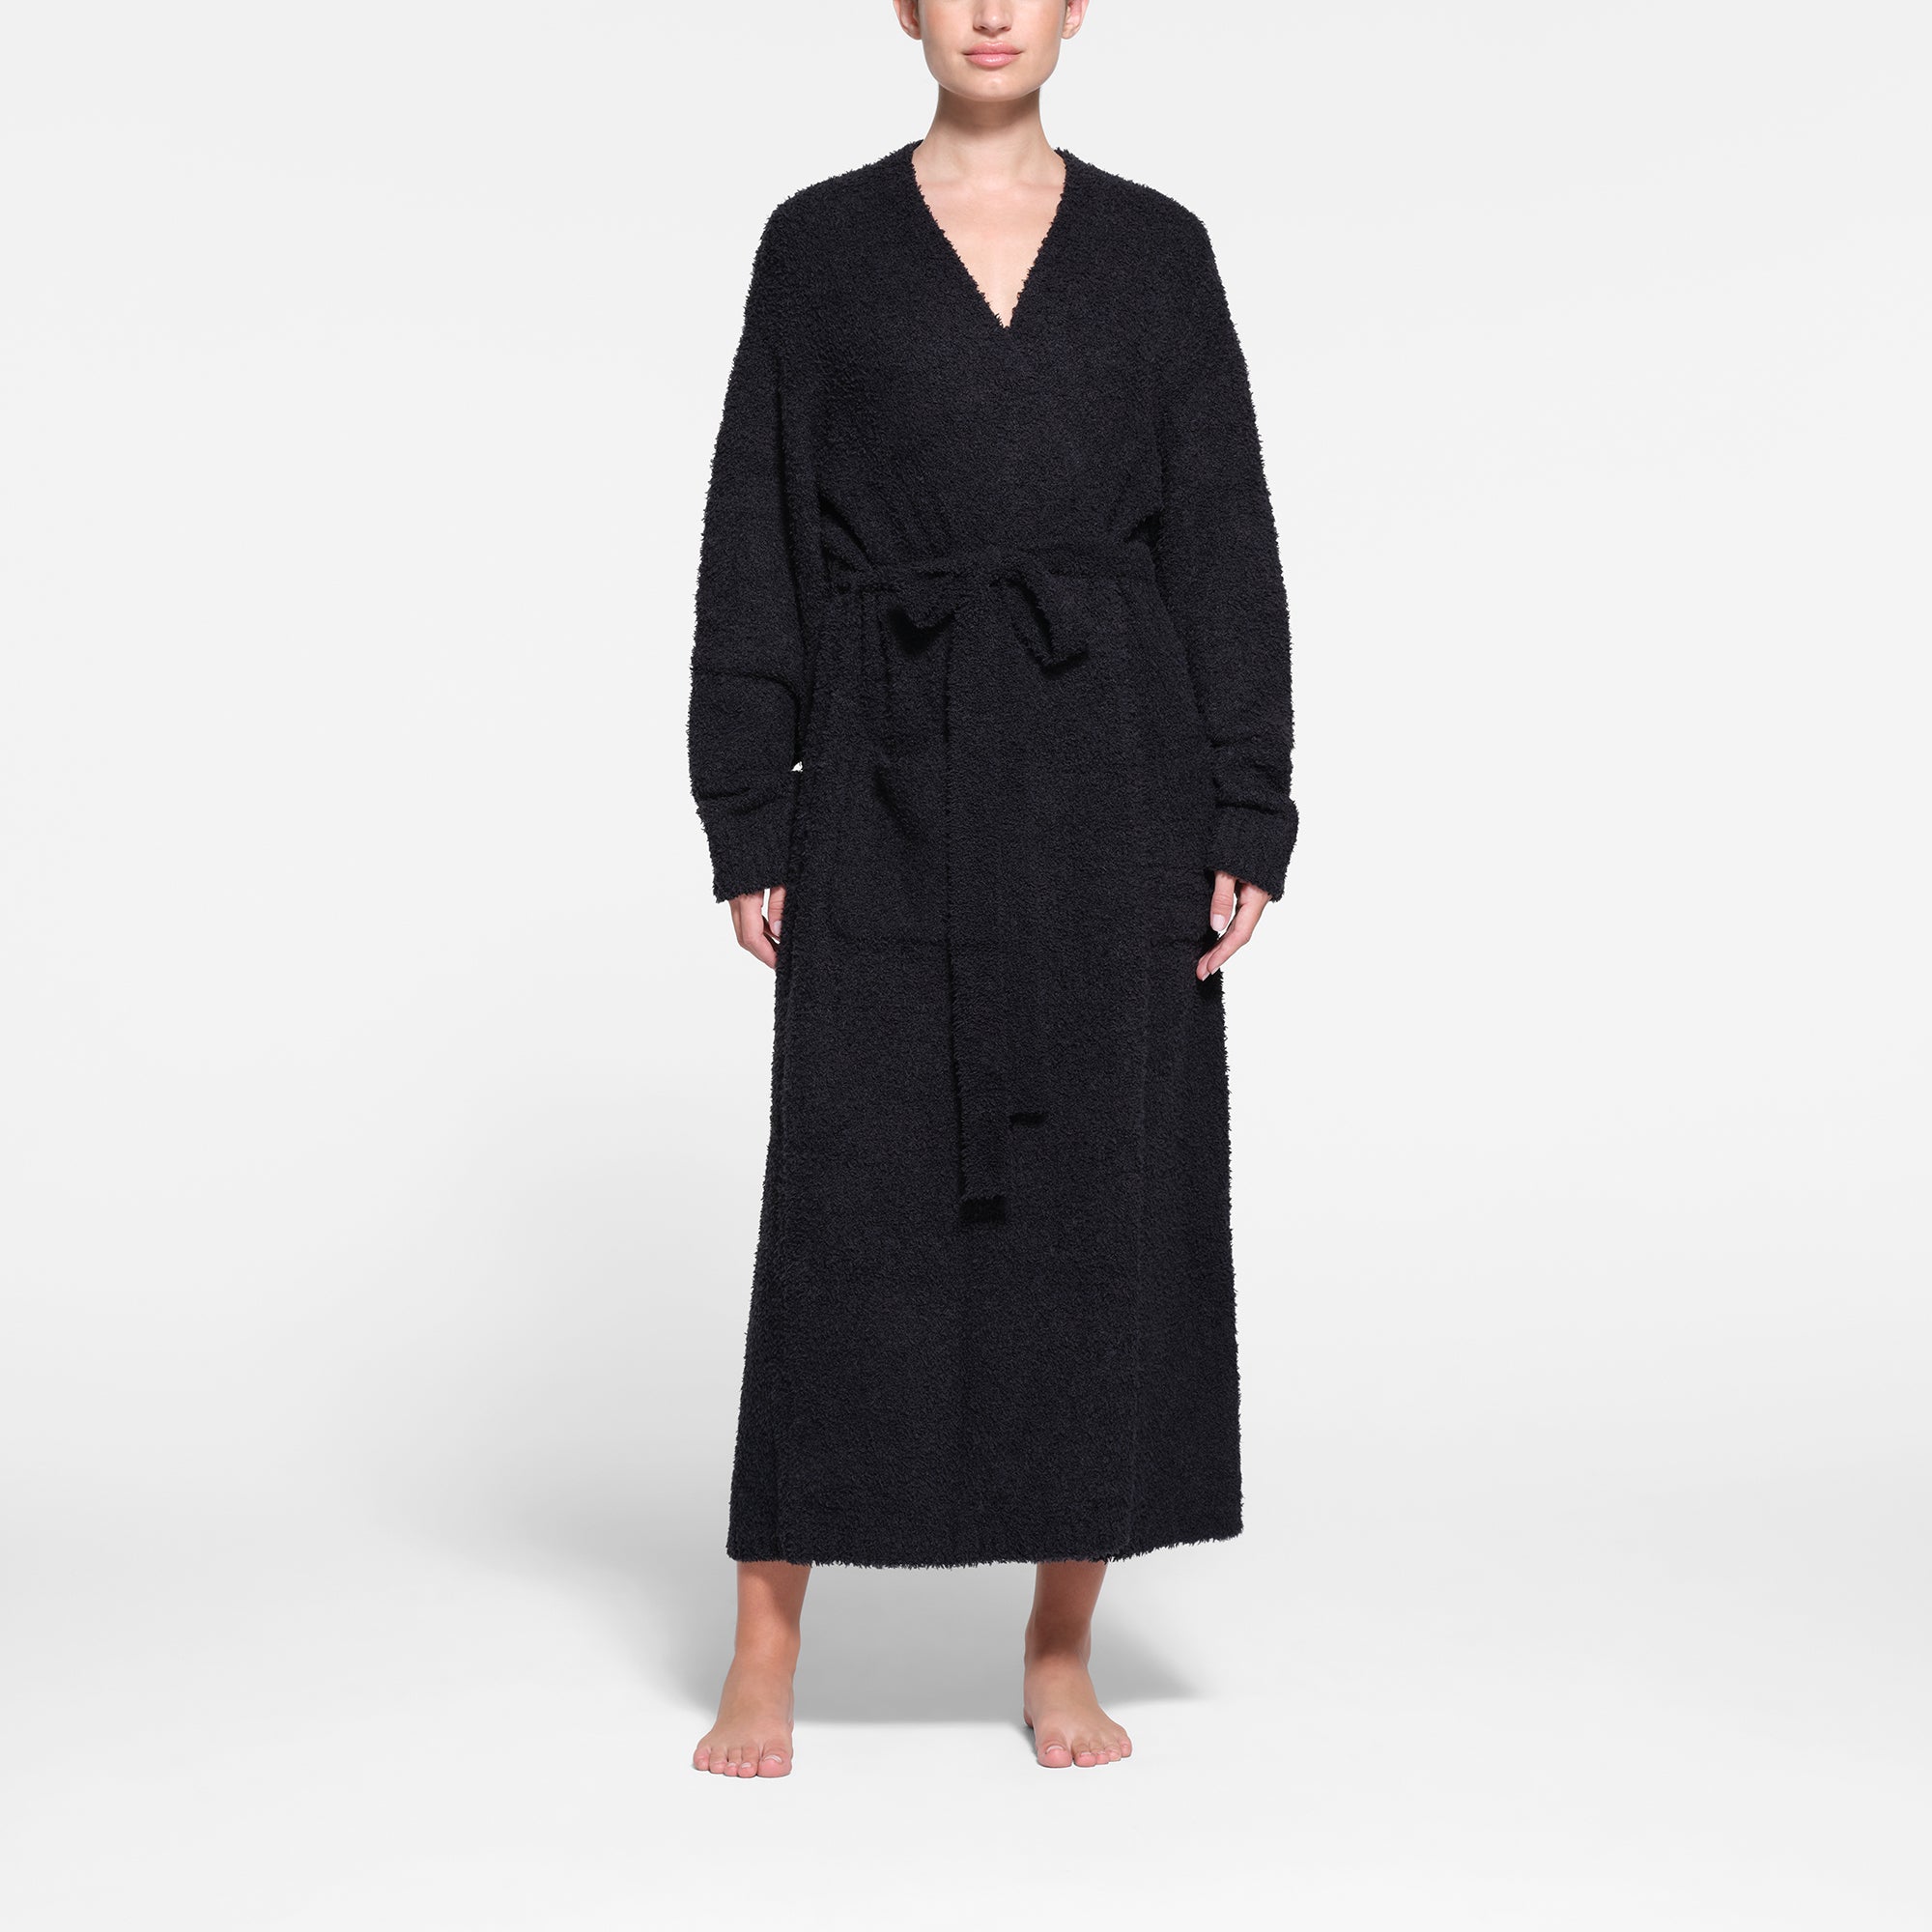 SKIMS, Intimates & Sleepwear, Brand New Skims Short Cozy Robe Onyx